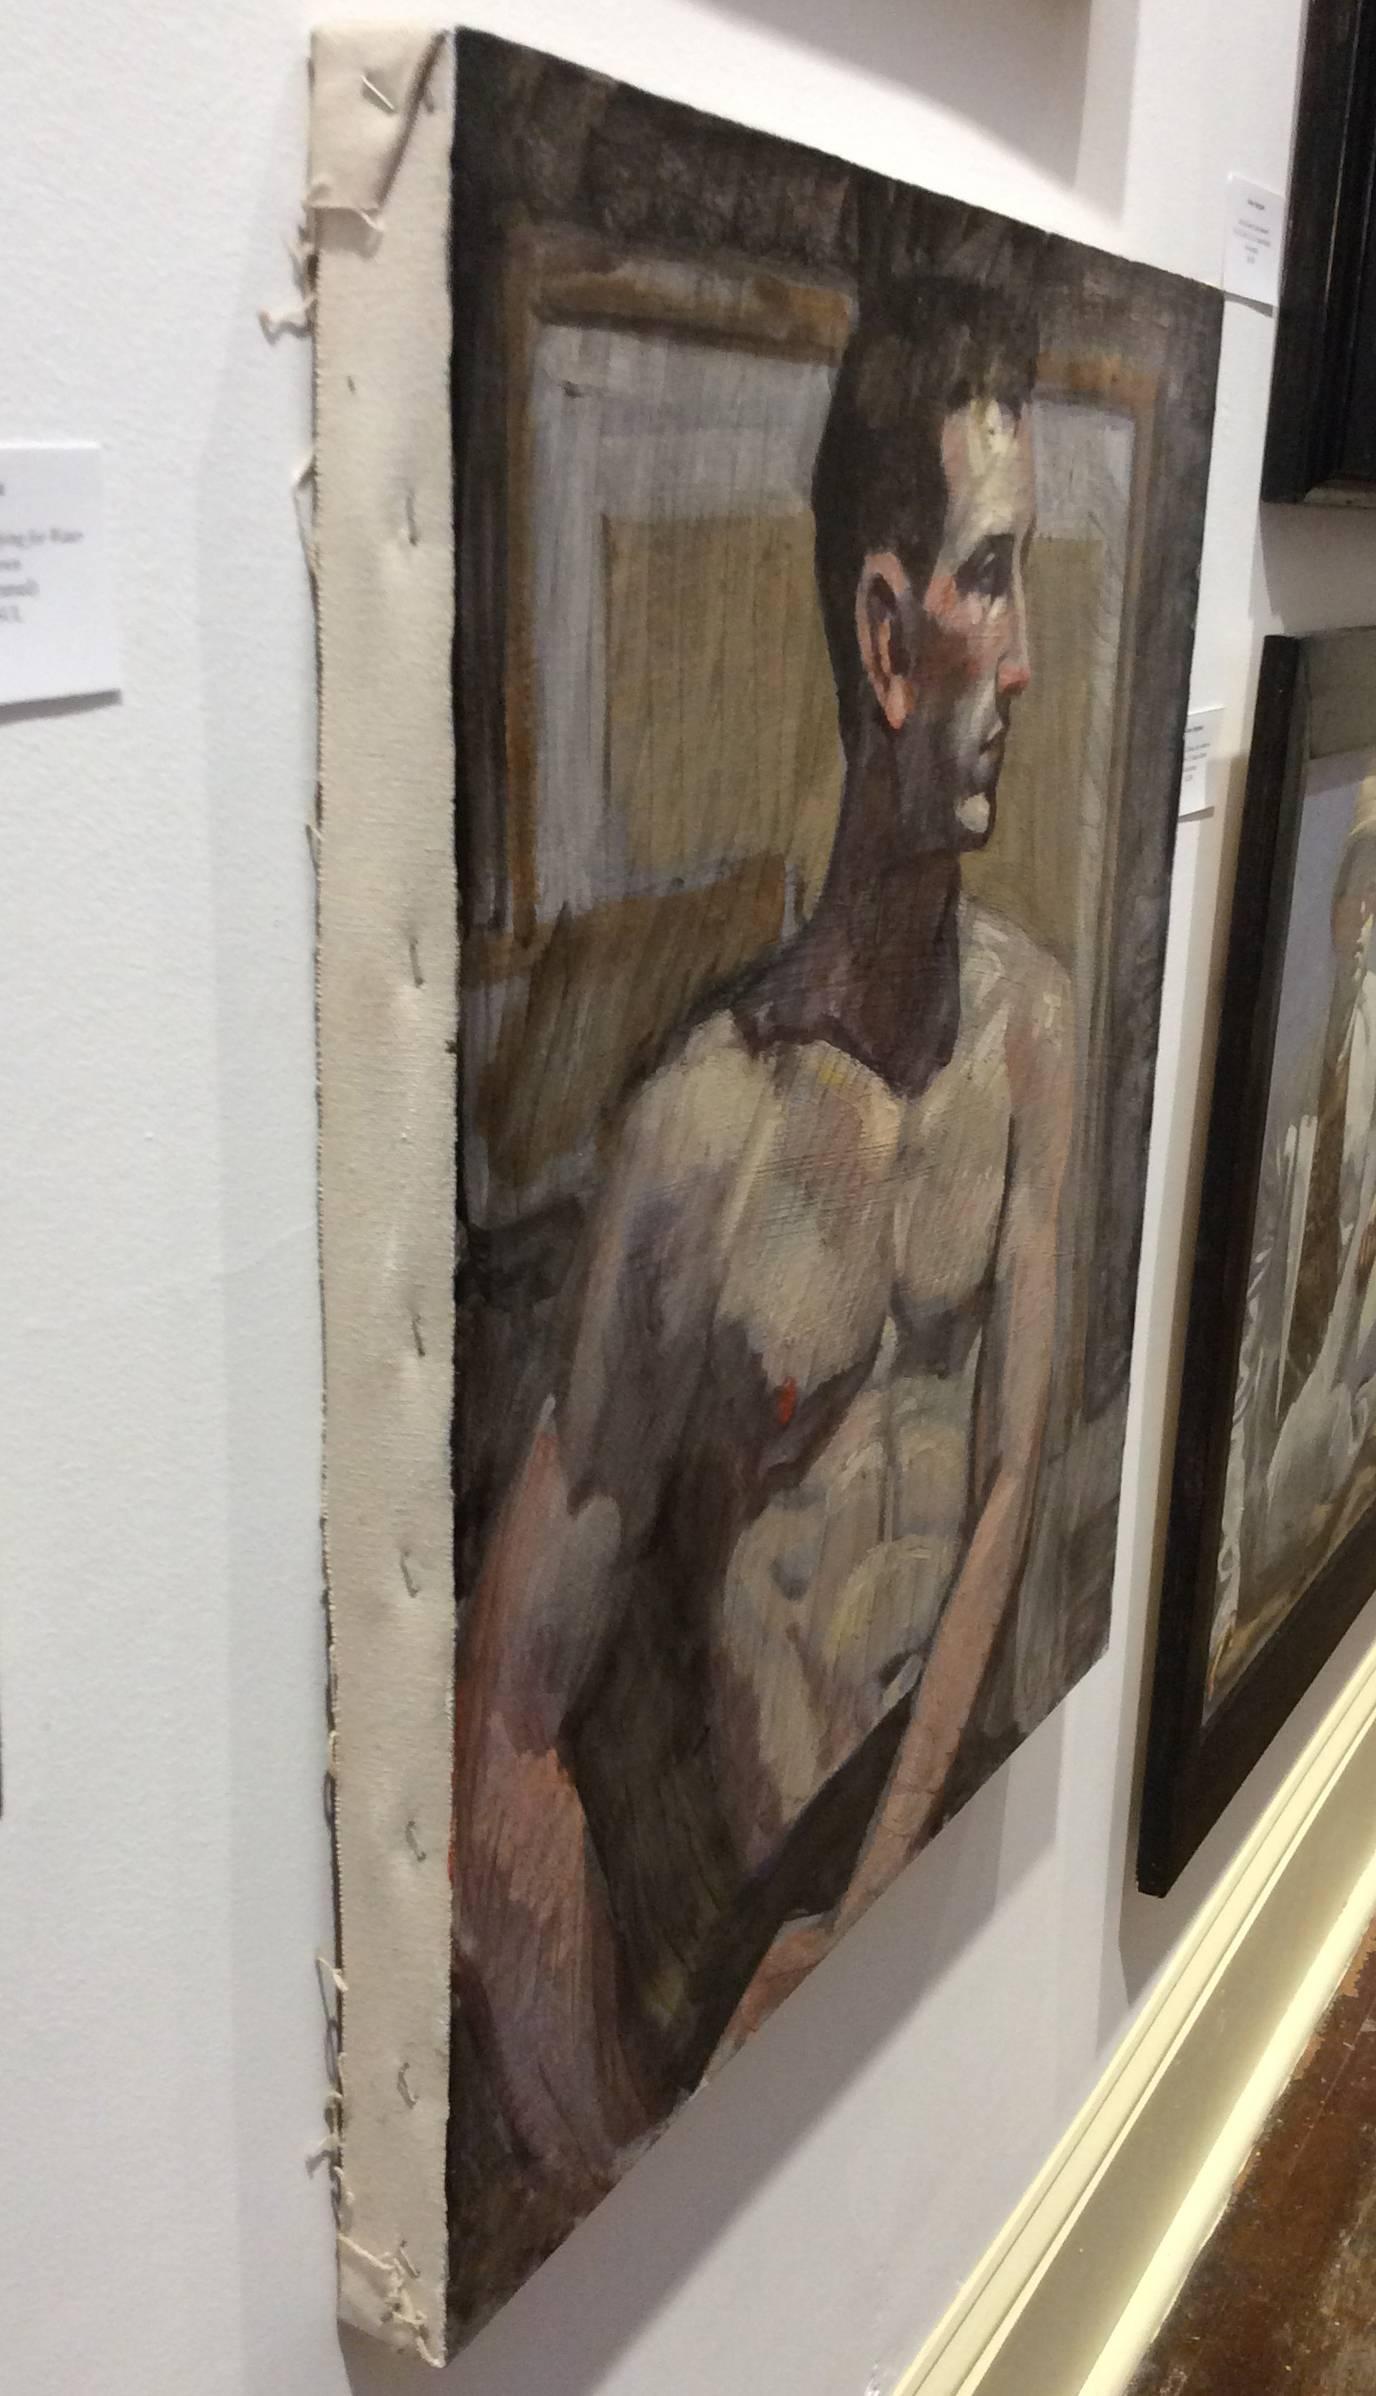 shirtless man painting